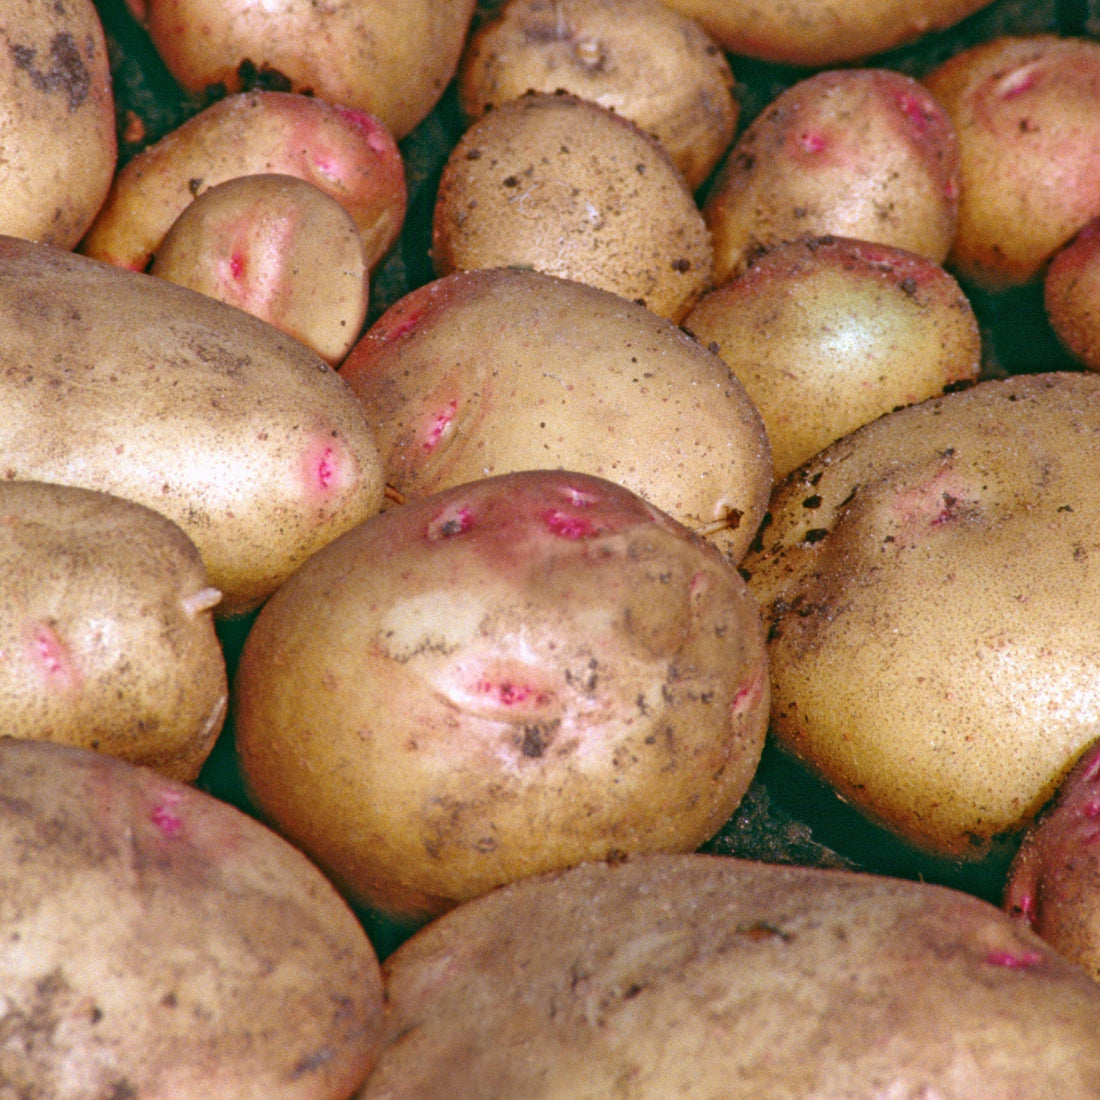 Premium CARA læggekartofler - Ideel til haveentusiaster - Frø af høj kvalitet til rigelig høst